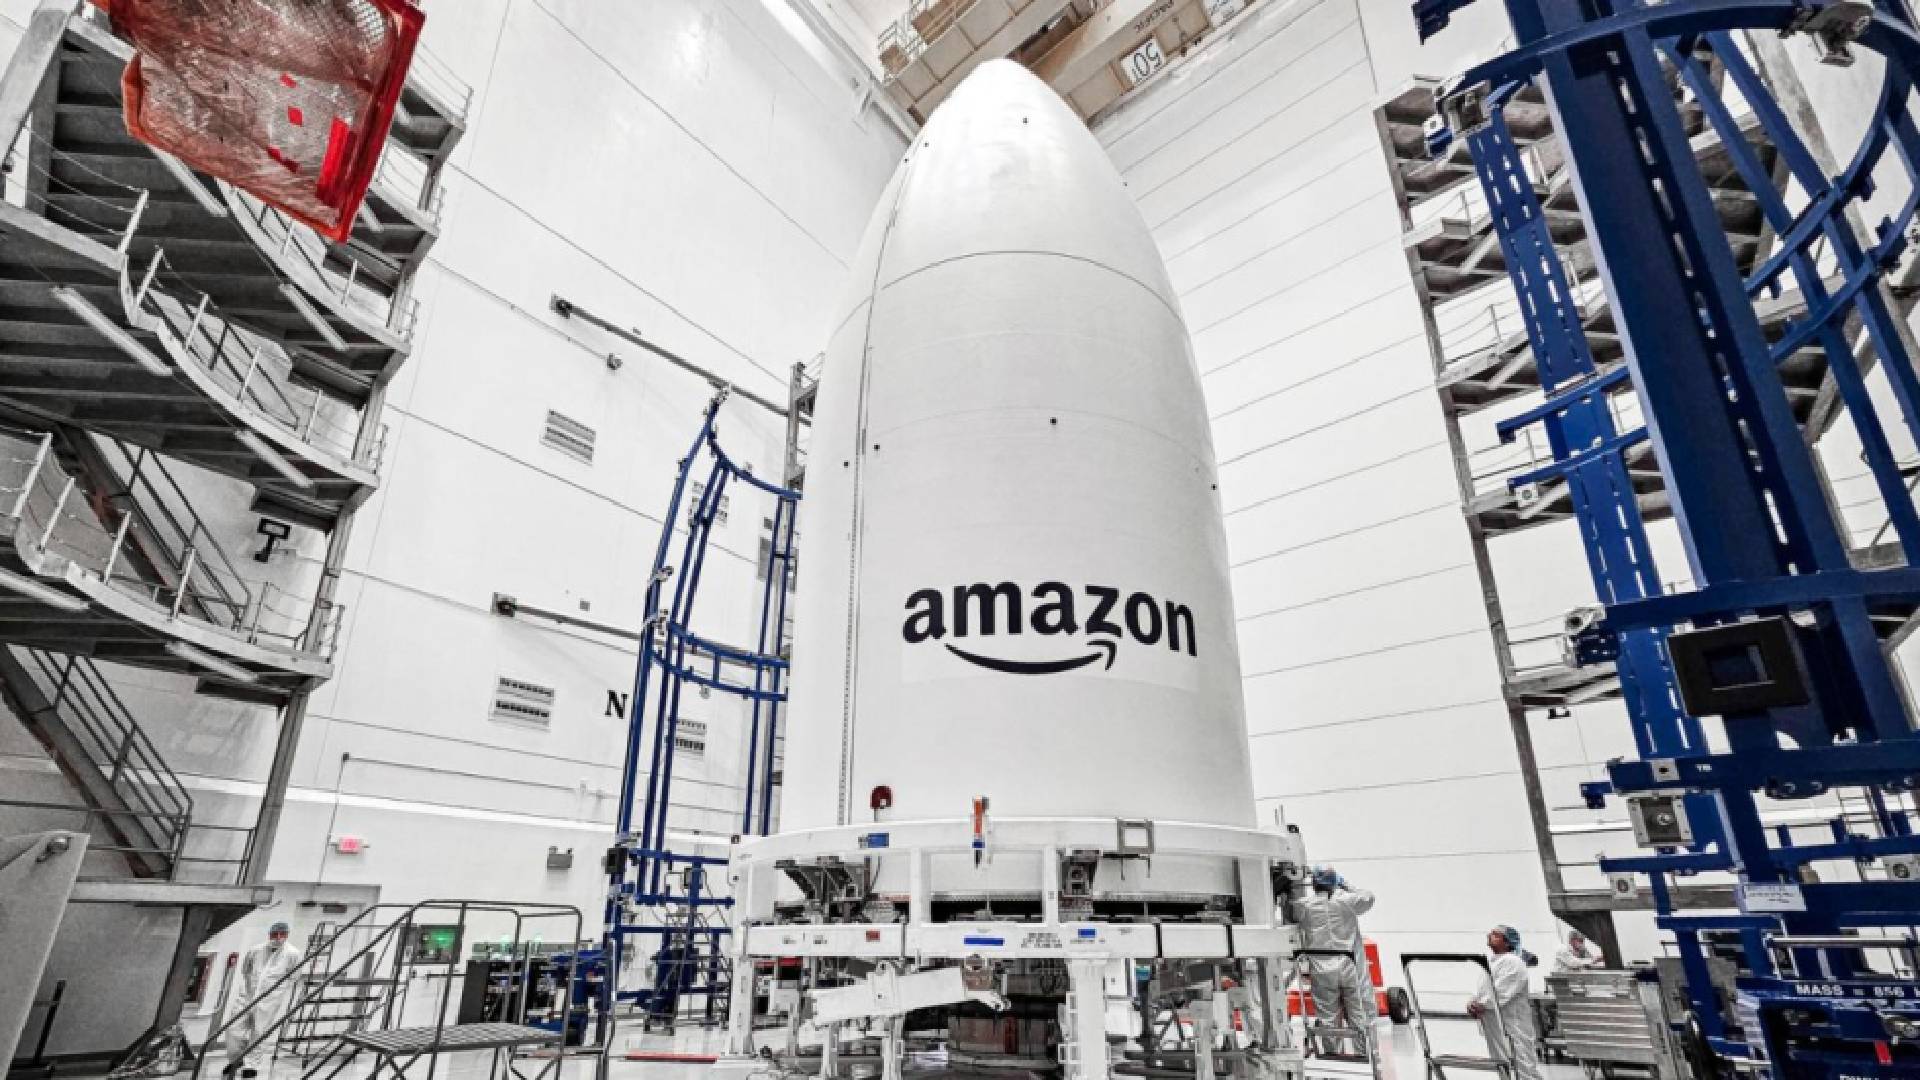 Amazon despega con éxito en su proyecto Kuiper de Satélites para la conectividad global